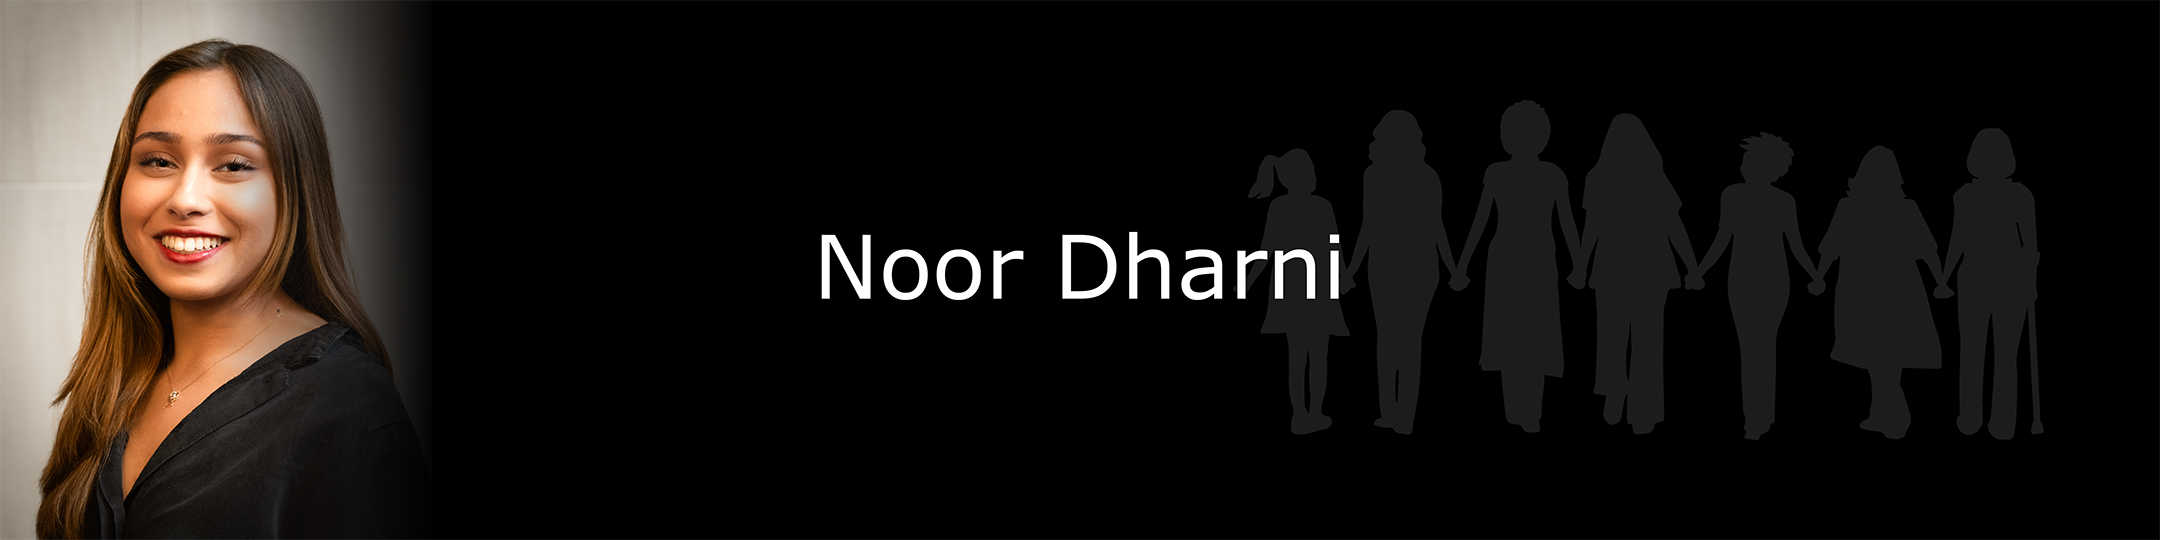 Photo of Noor Dharni.